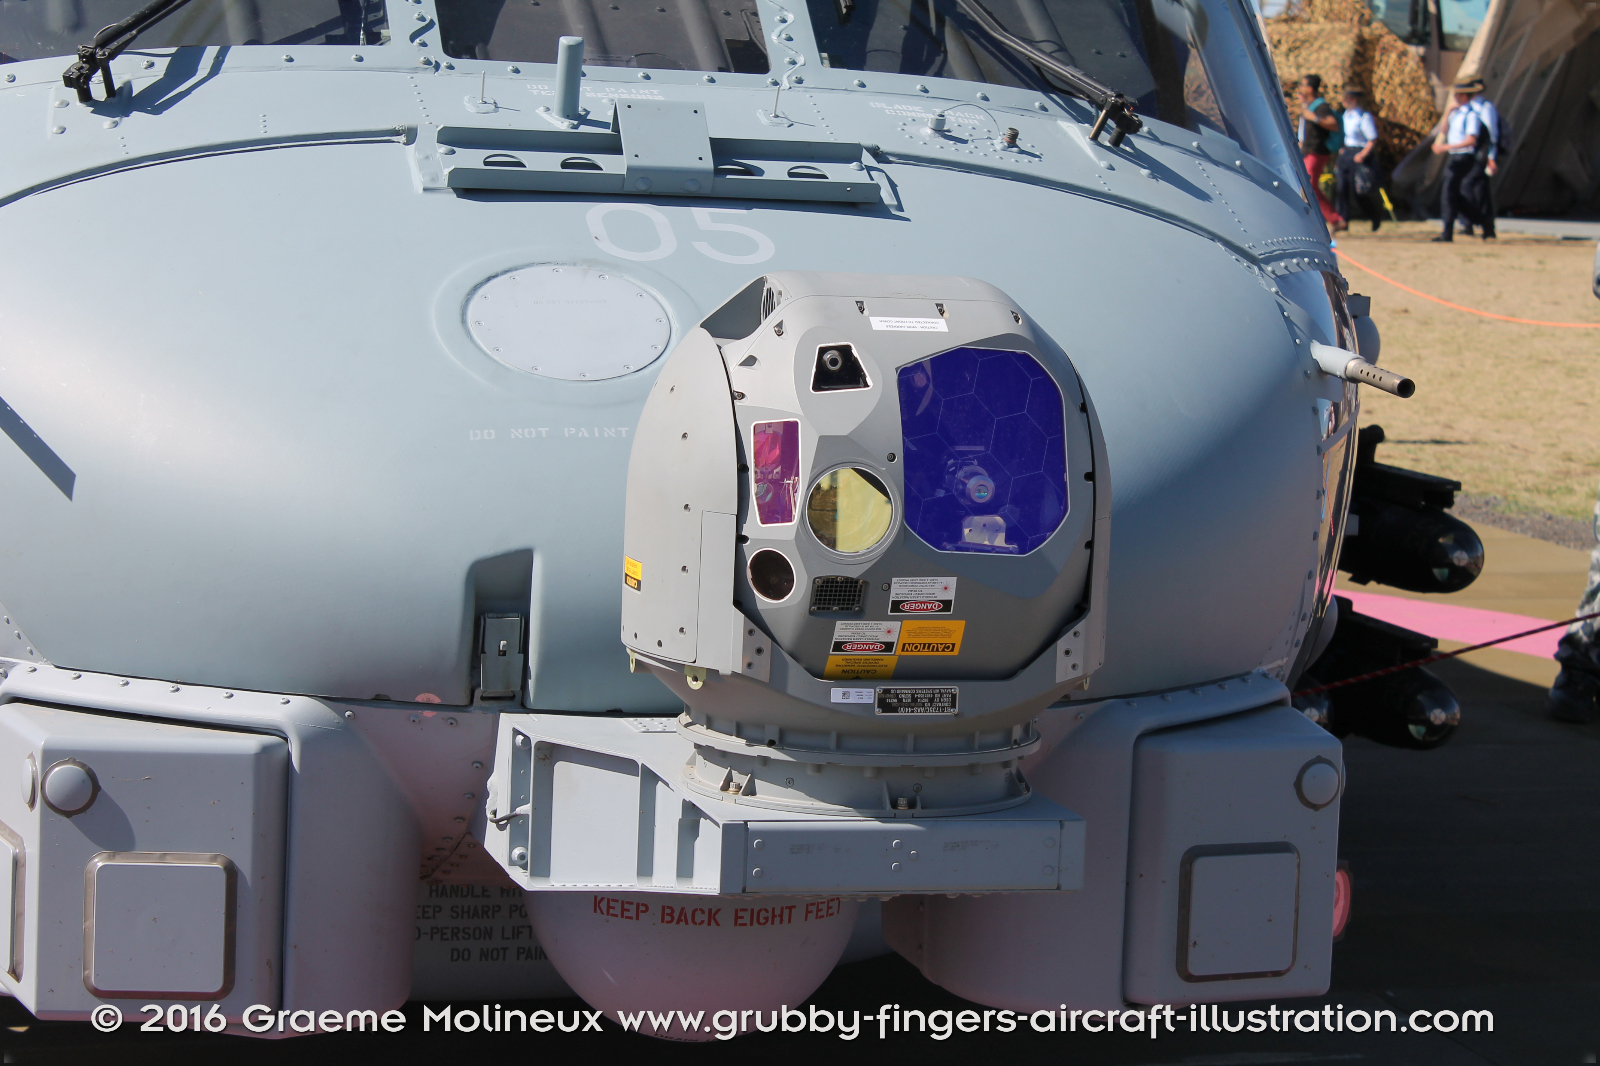 SIKORSKY_MH-60R_Seahawk_N48-005_Avalon_2015_15_GrubbyFingers